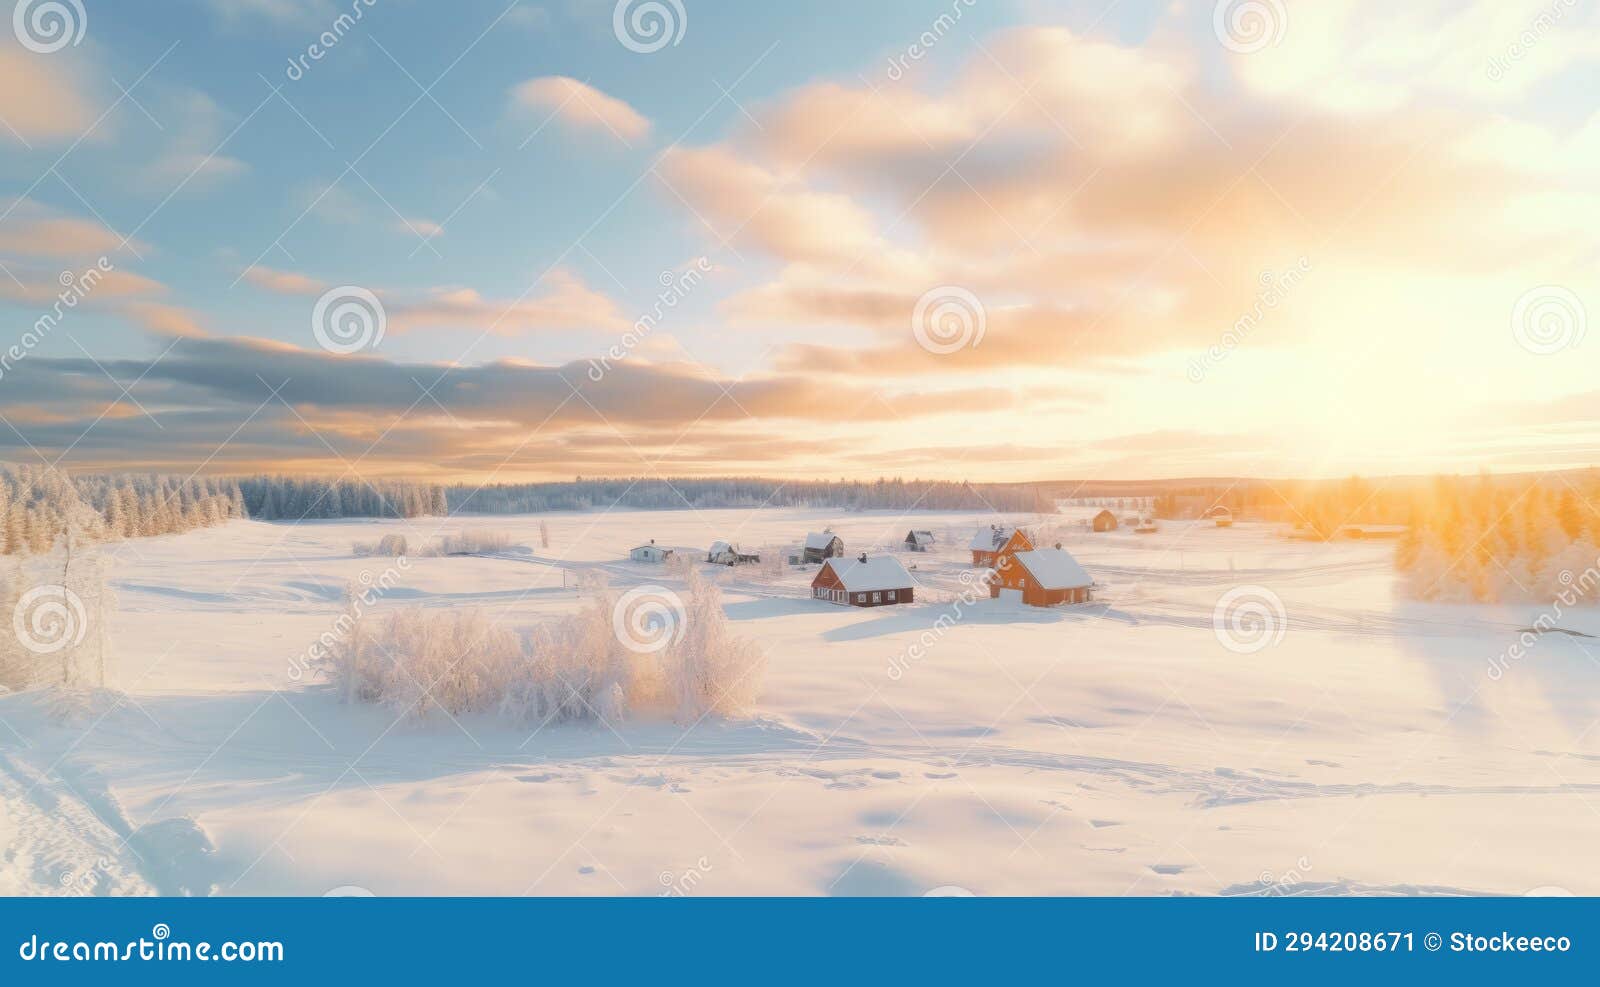 winter wonderland: a serene village in rural finland